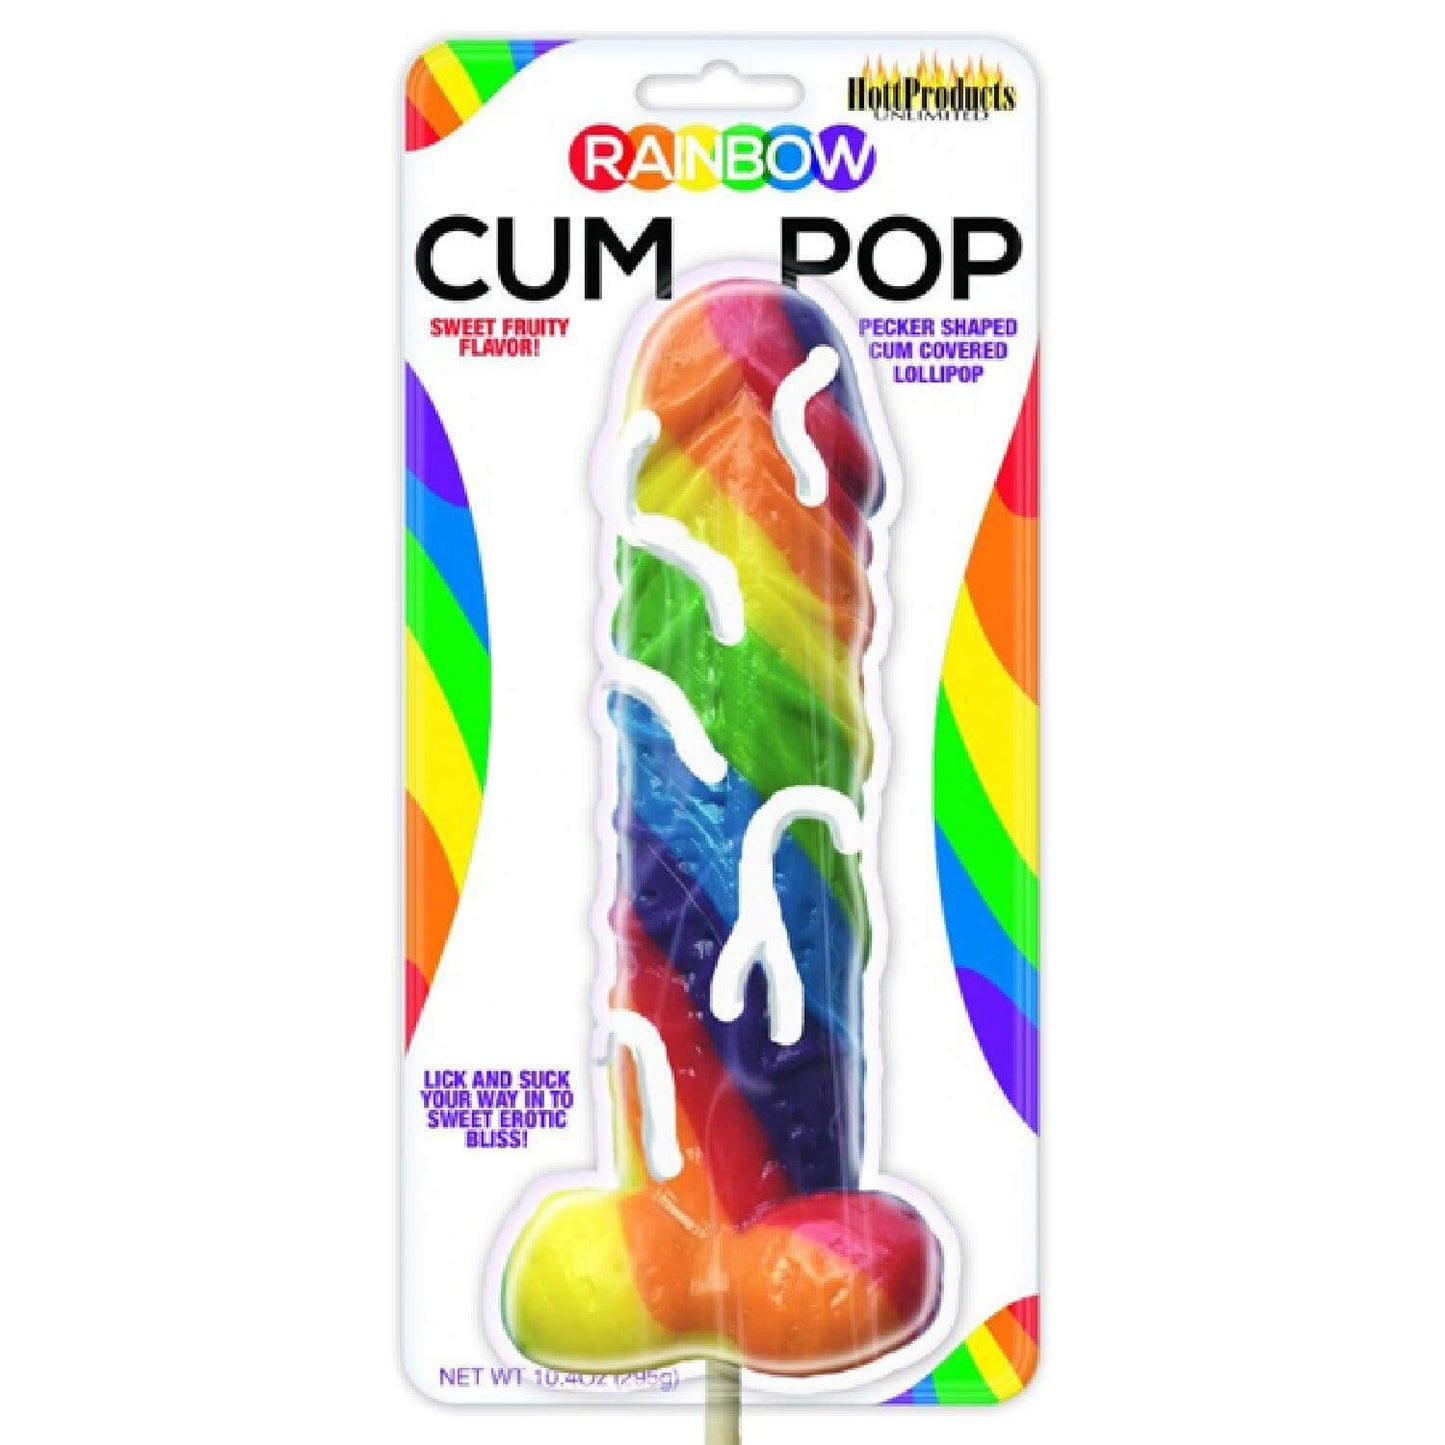 Cum Pops Lollipop - Take A Peek